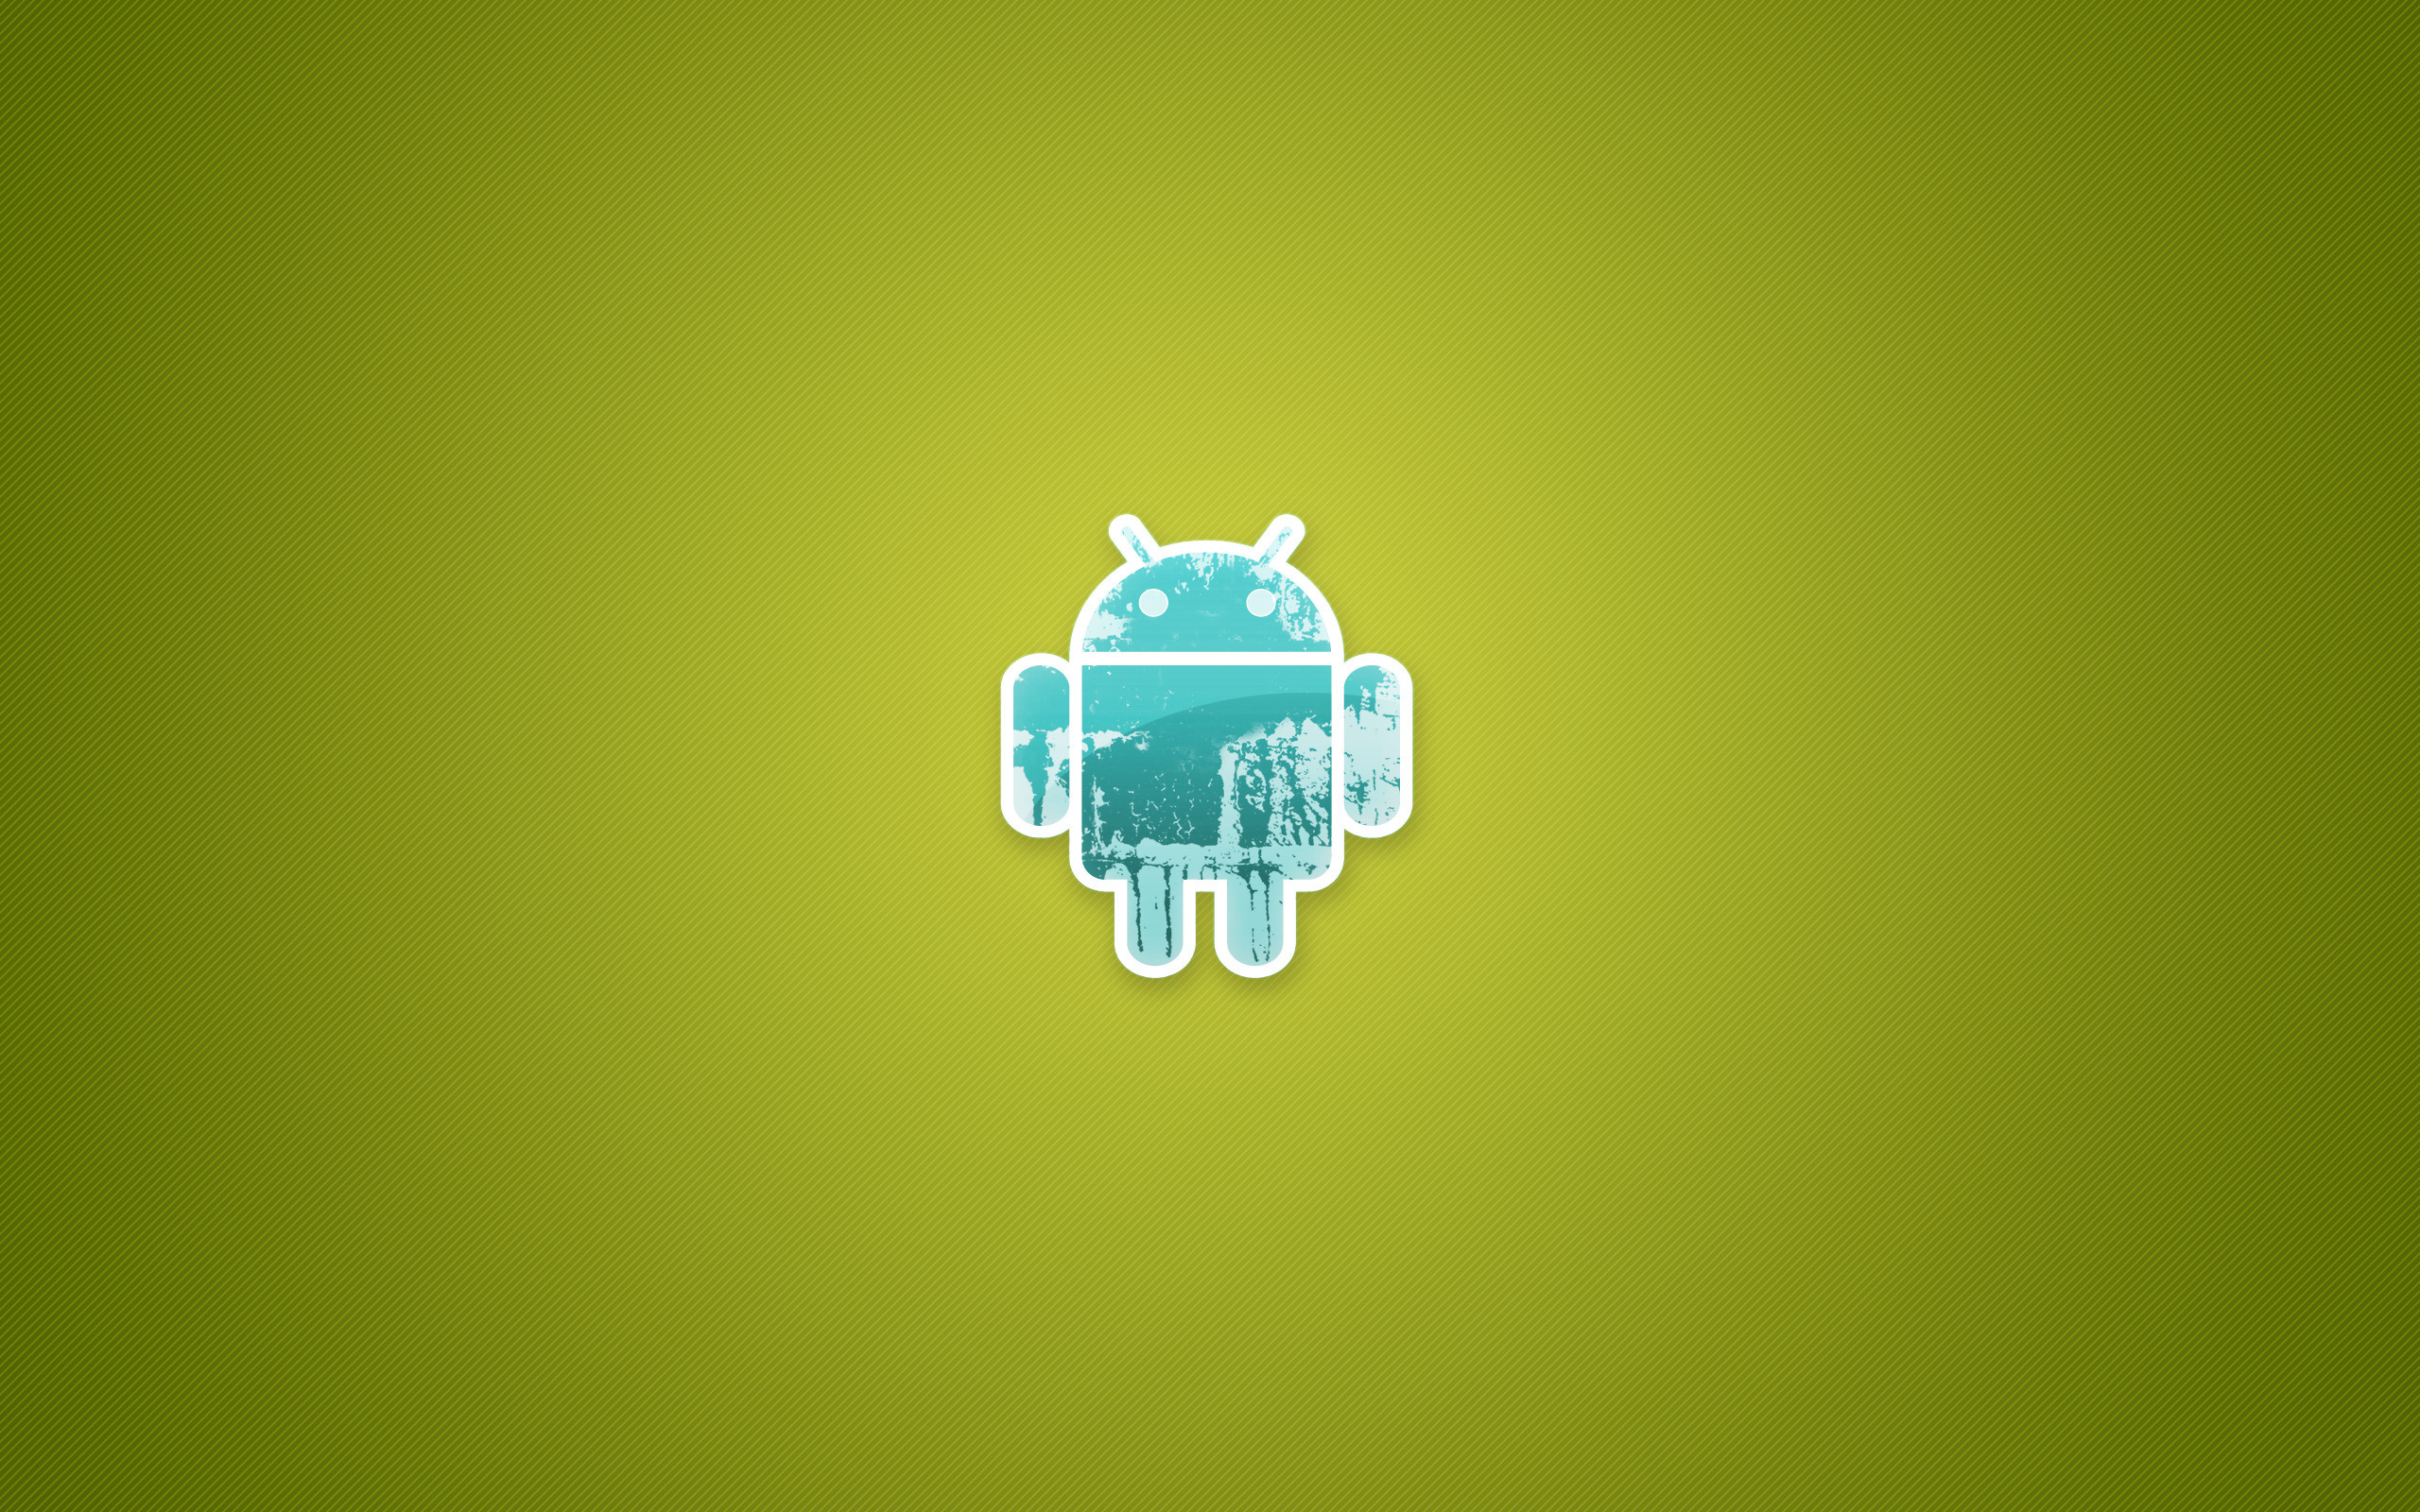 Обои на андроид. Обои на рабочий стол Android. Логотип андроид. Обои на планшет андроид. Андроид ссылку на сайт на рабочий стол